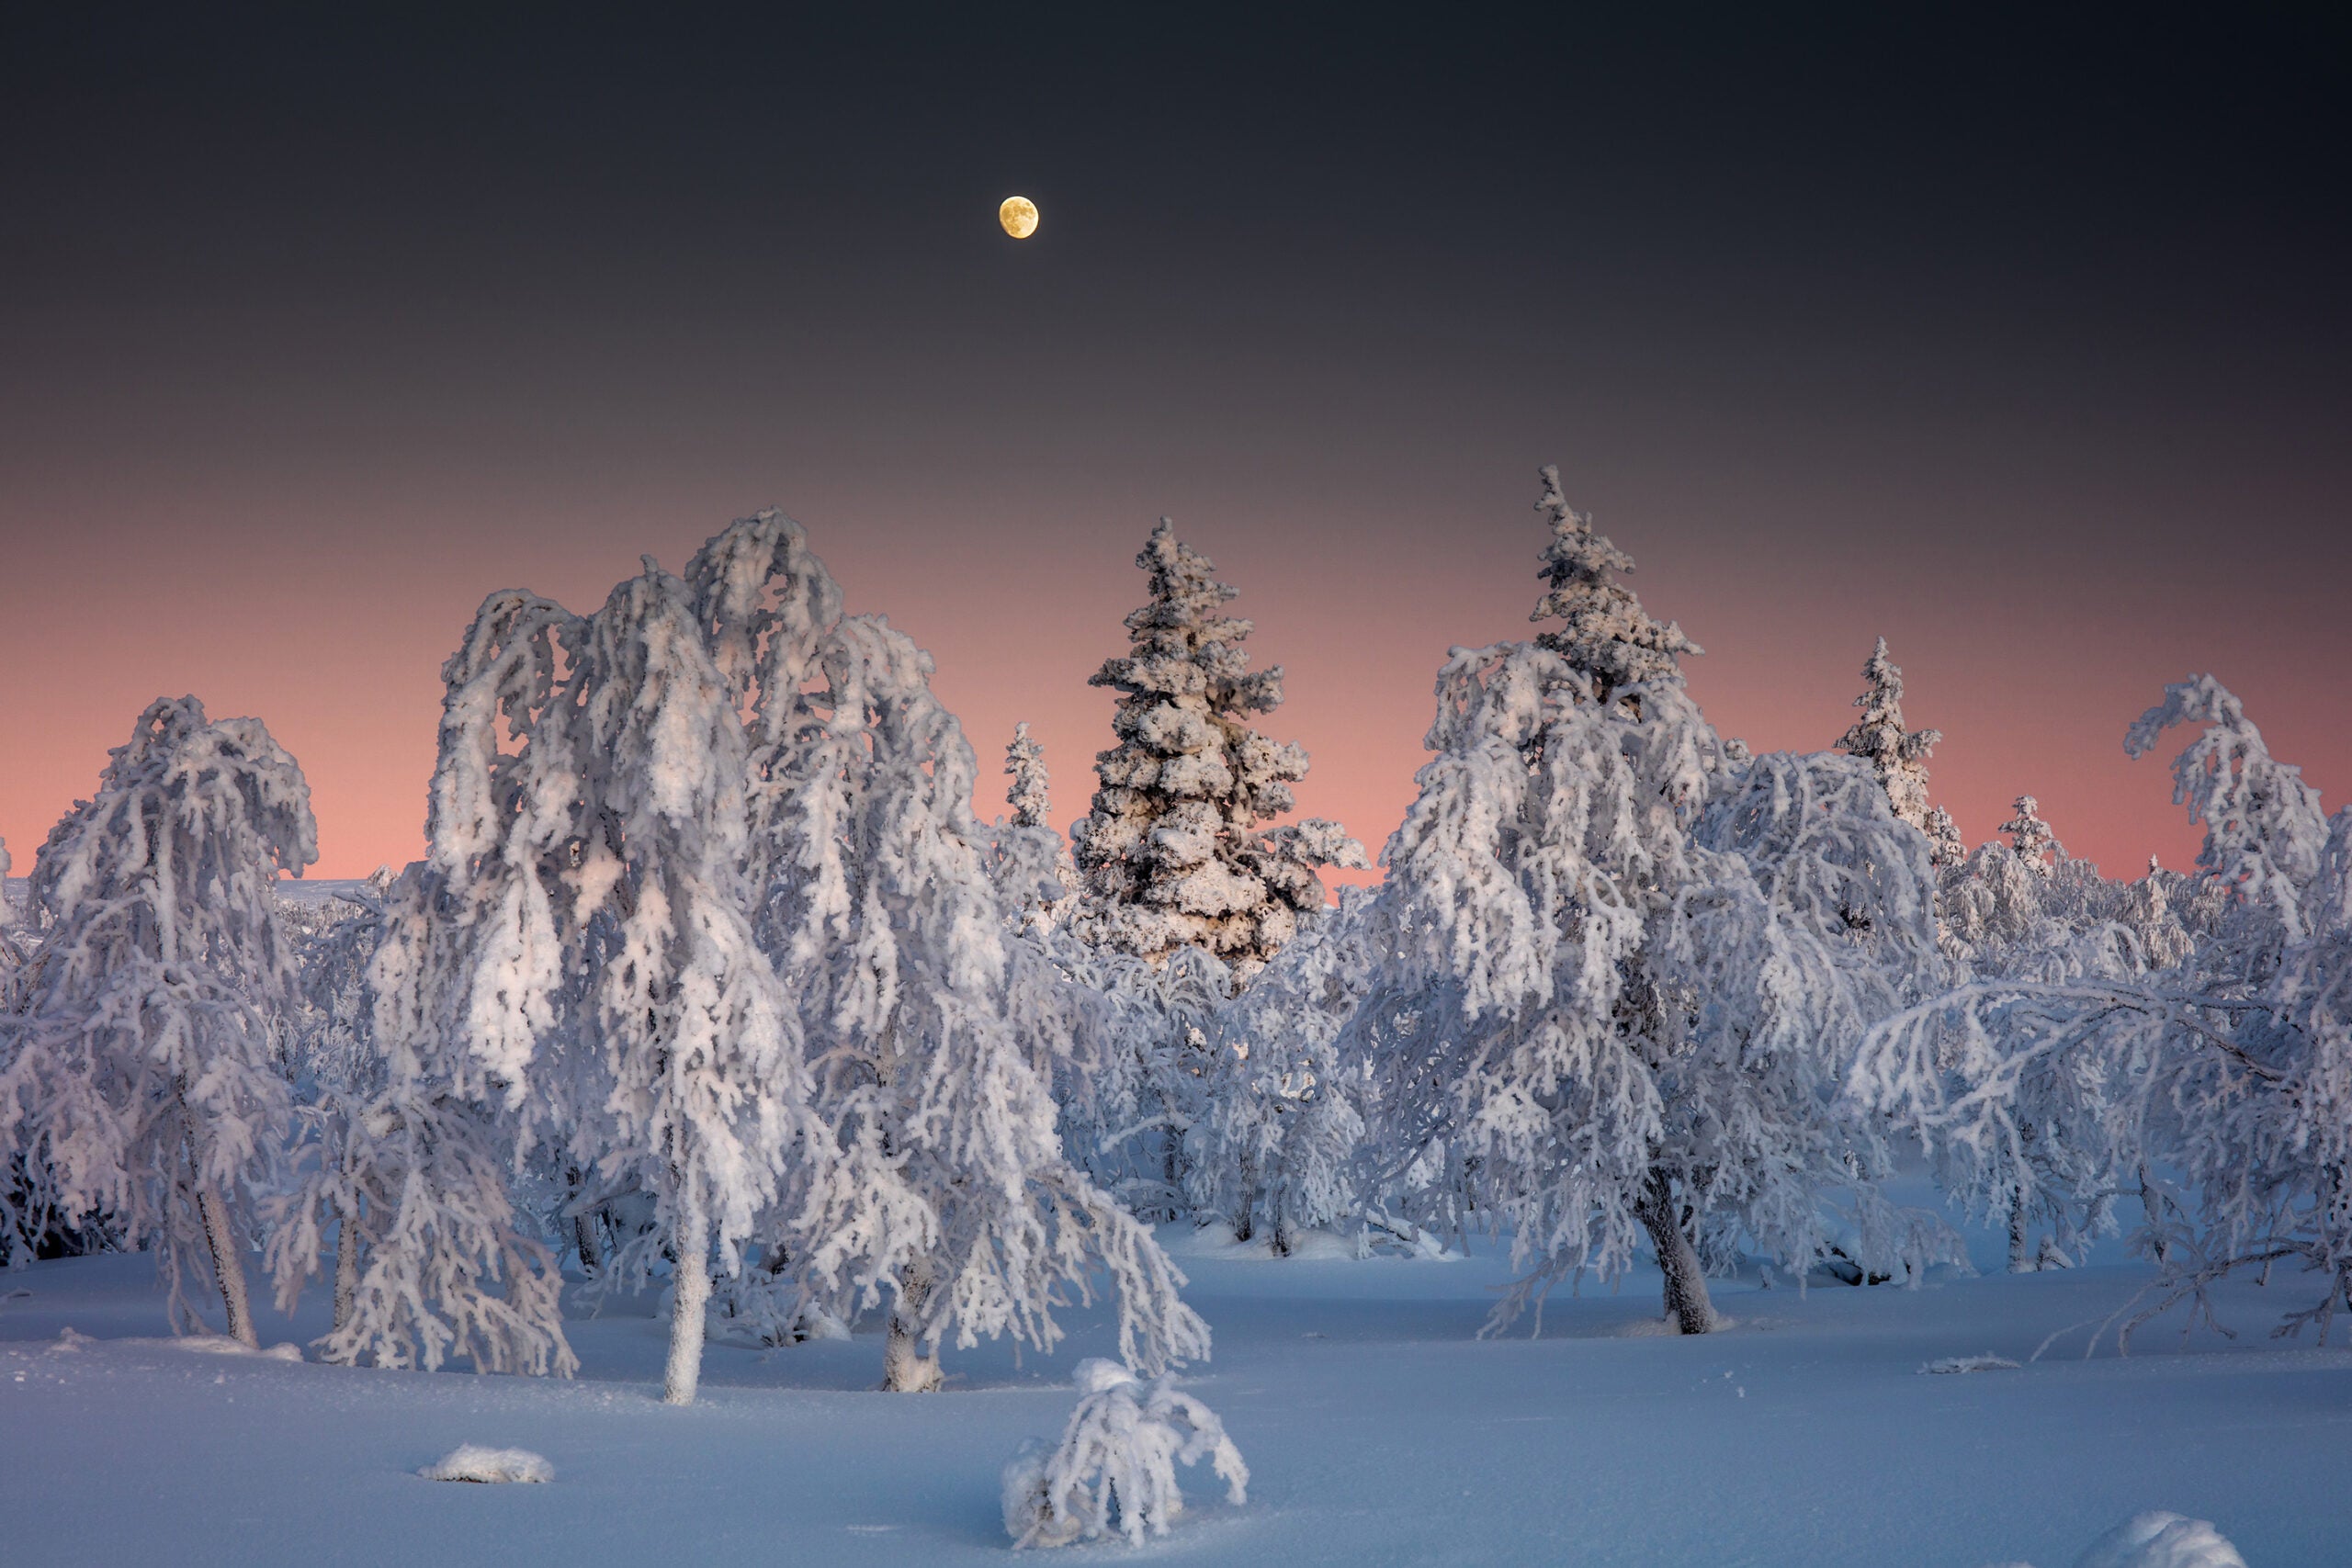 âMoon over a snowbound northern forest,â Lapland, Finland. 